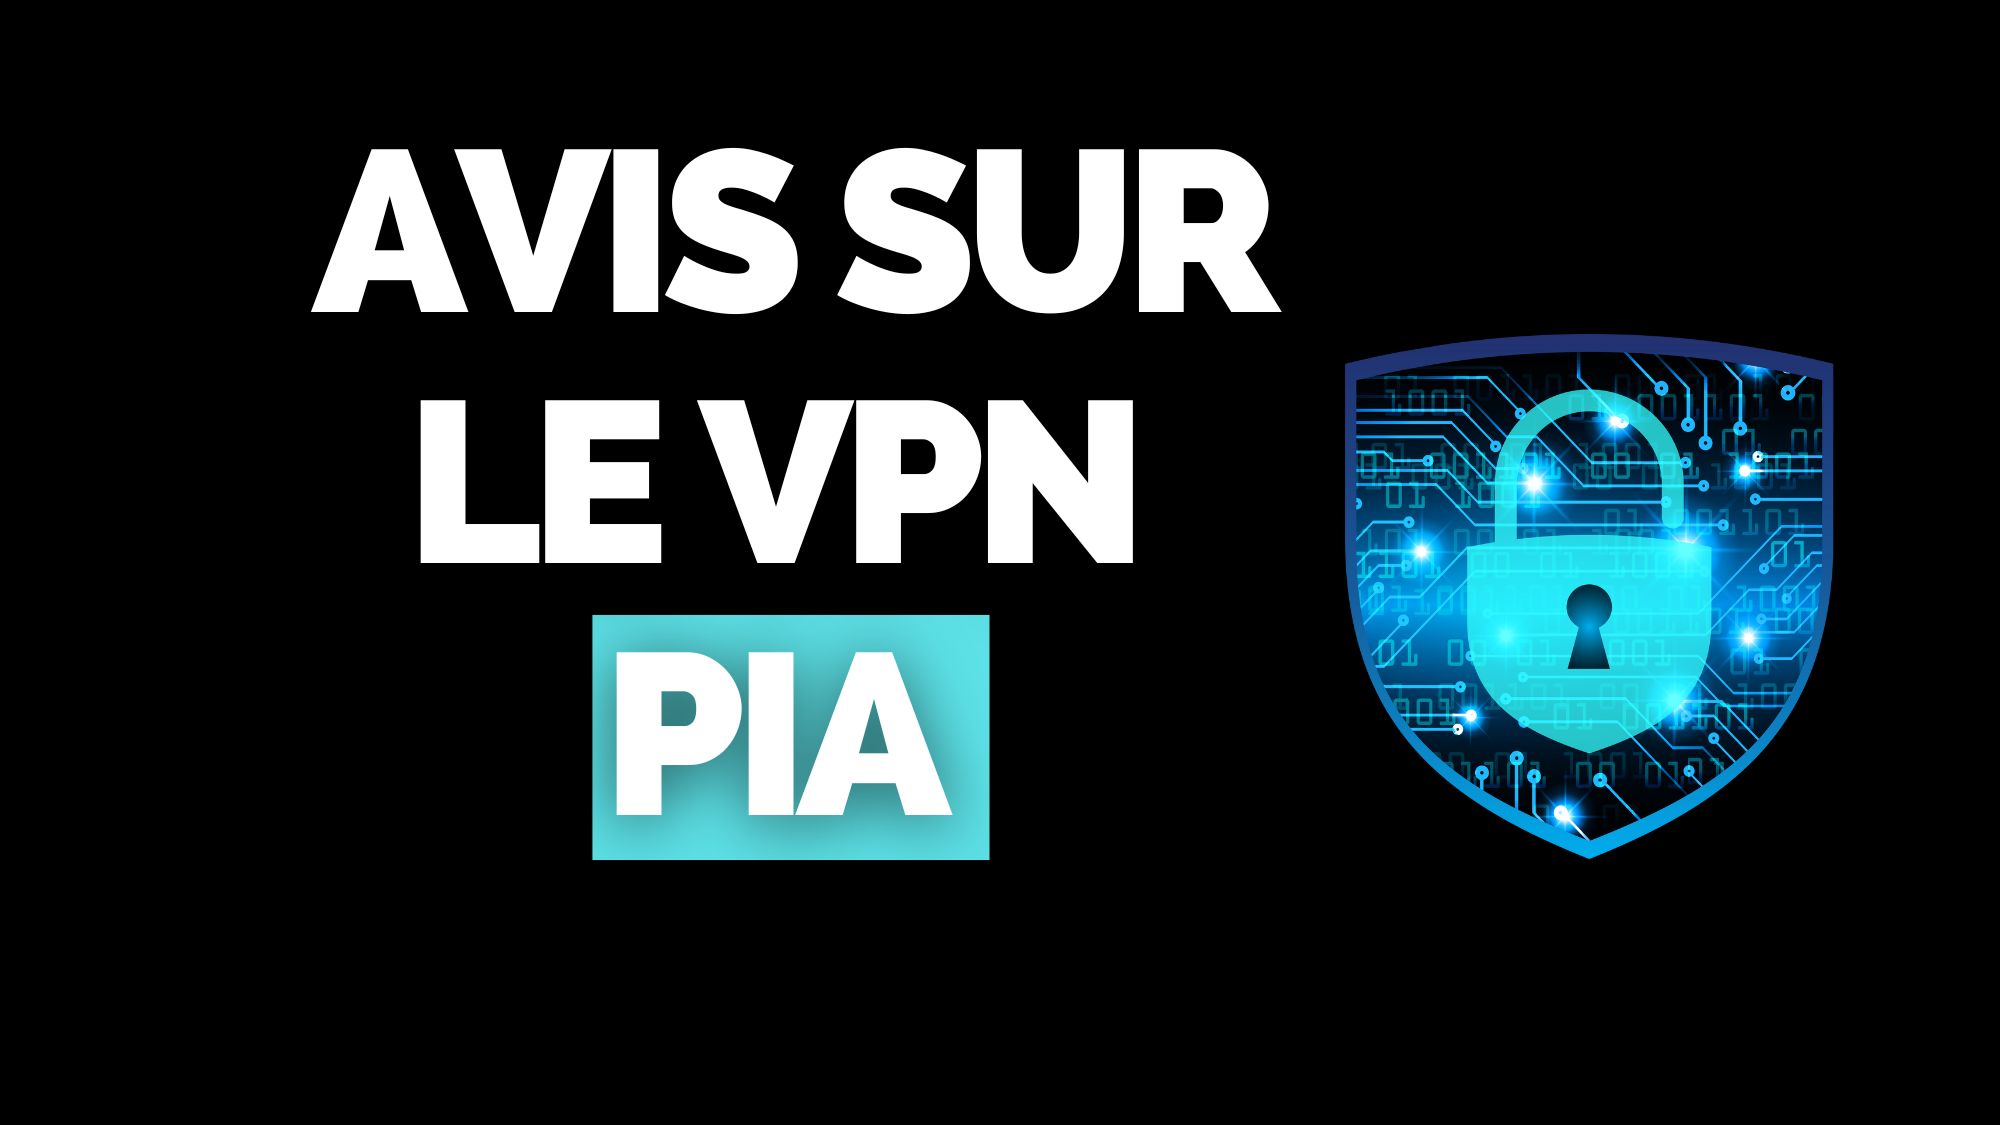 Avis sur le VPN PIA